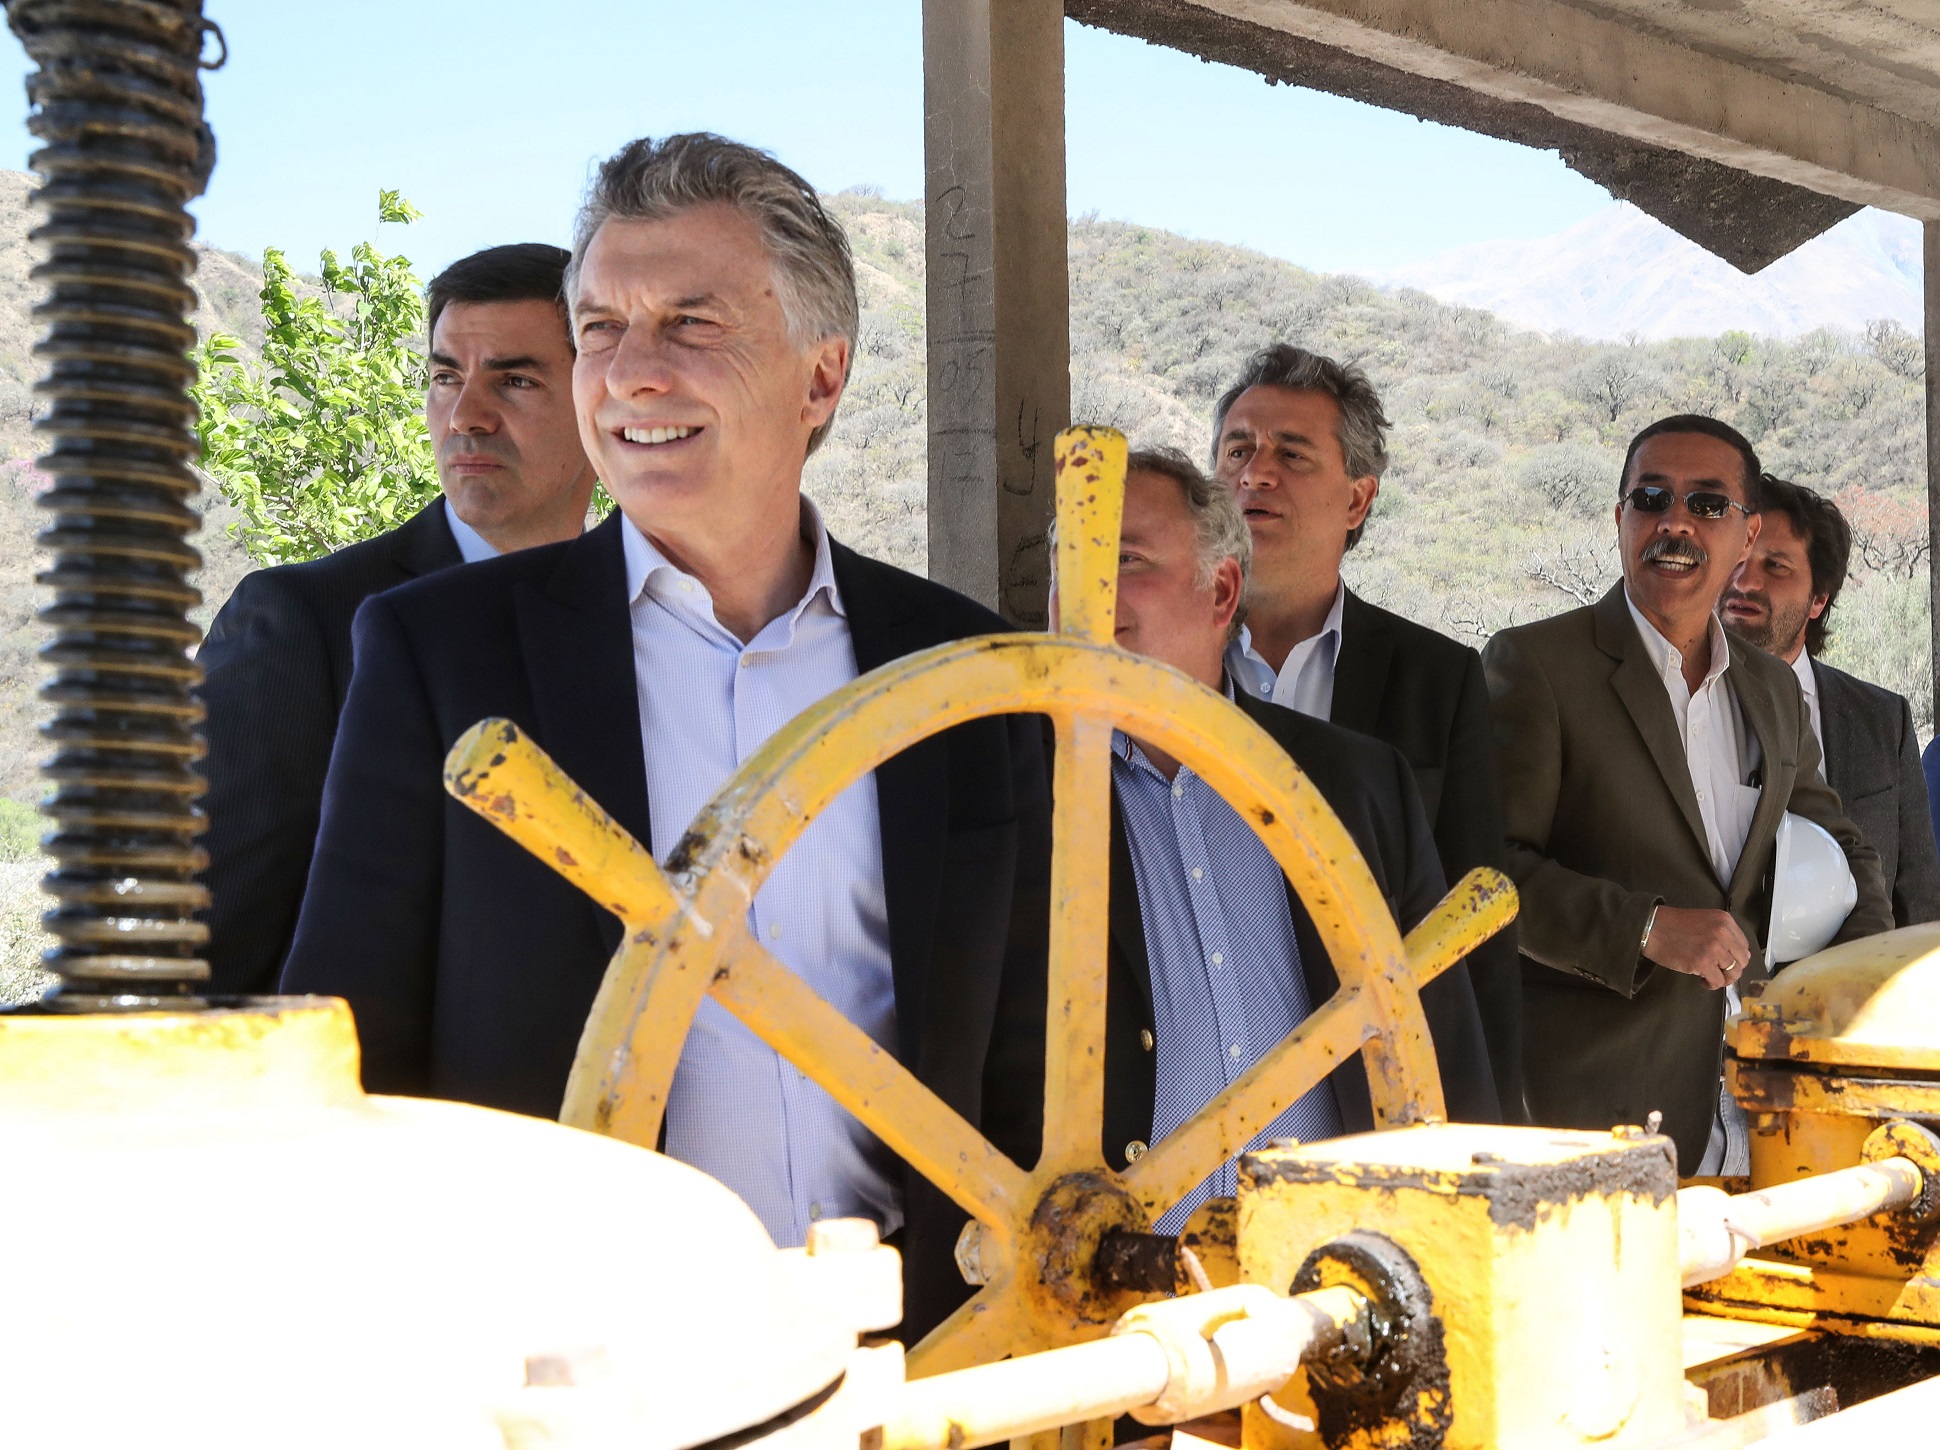 Macri inauguró obras para la reconversión productiva del área tabacalera de Salta